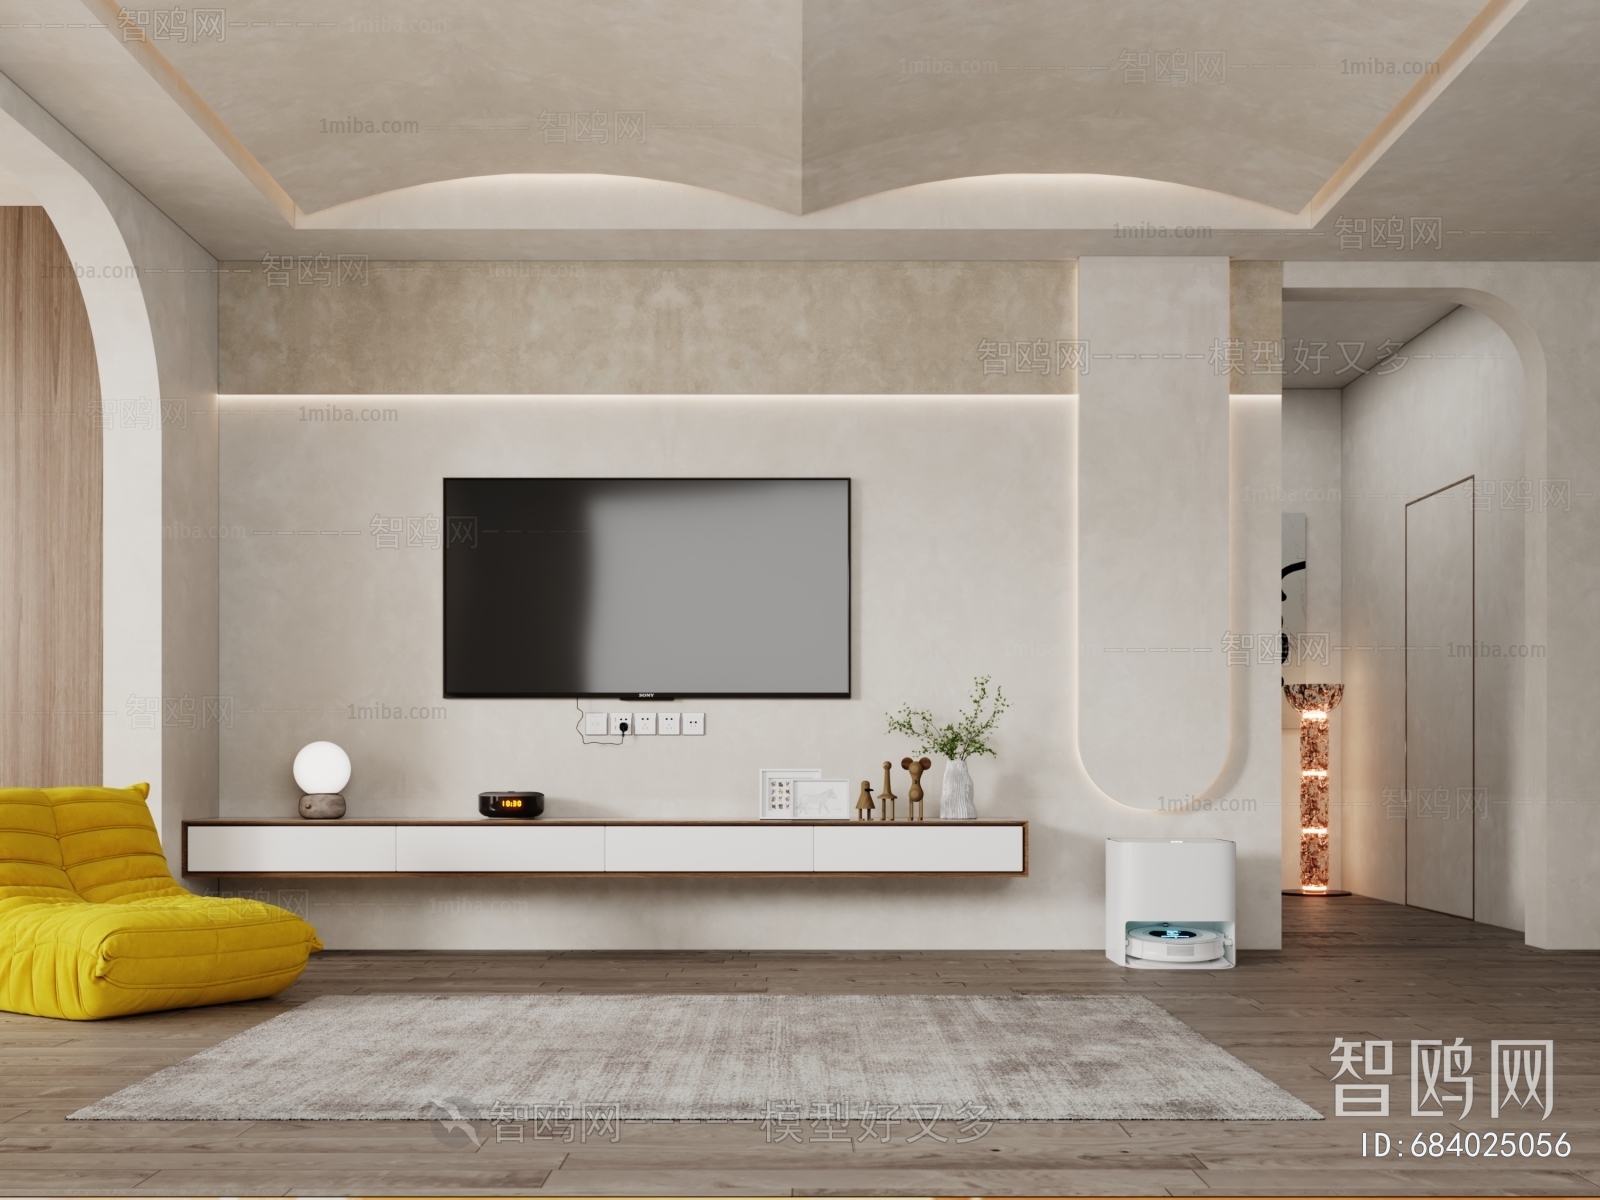 Modern Wabi-sabi Style TV Wall